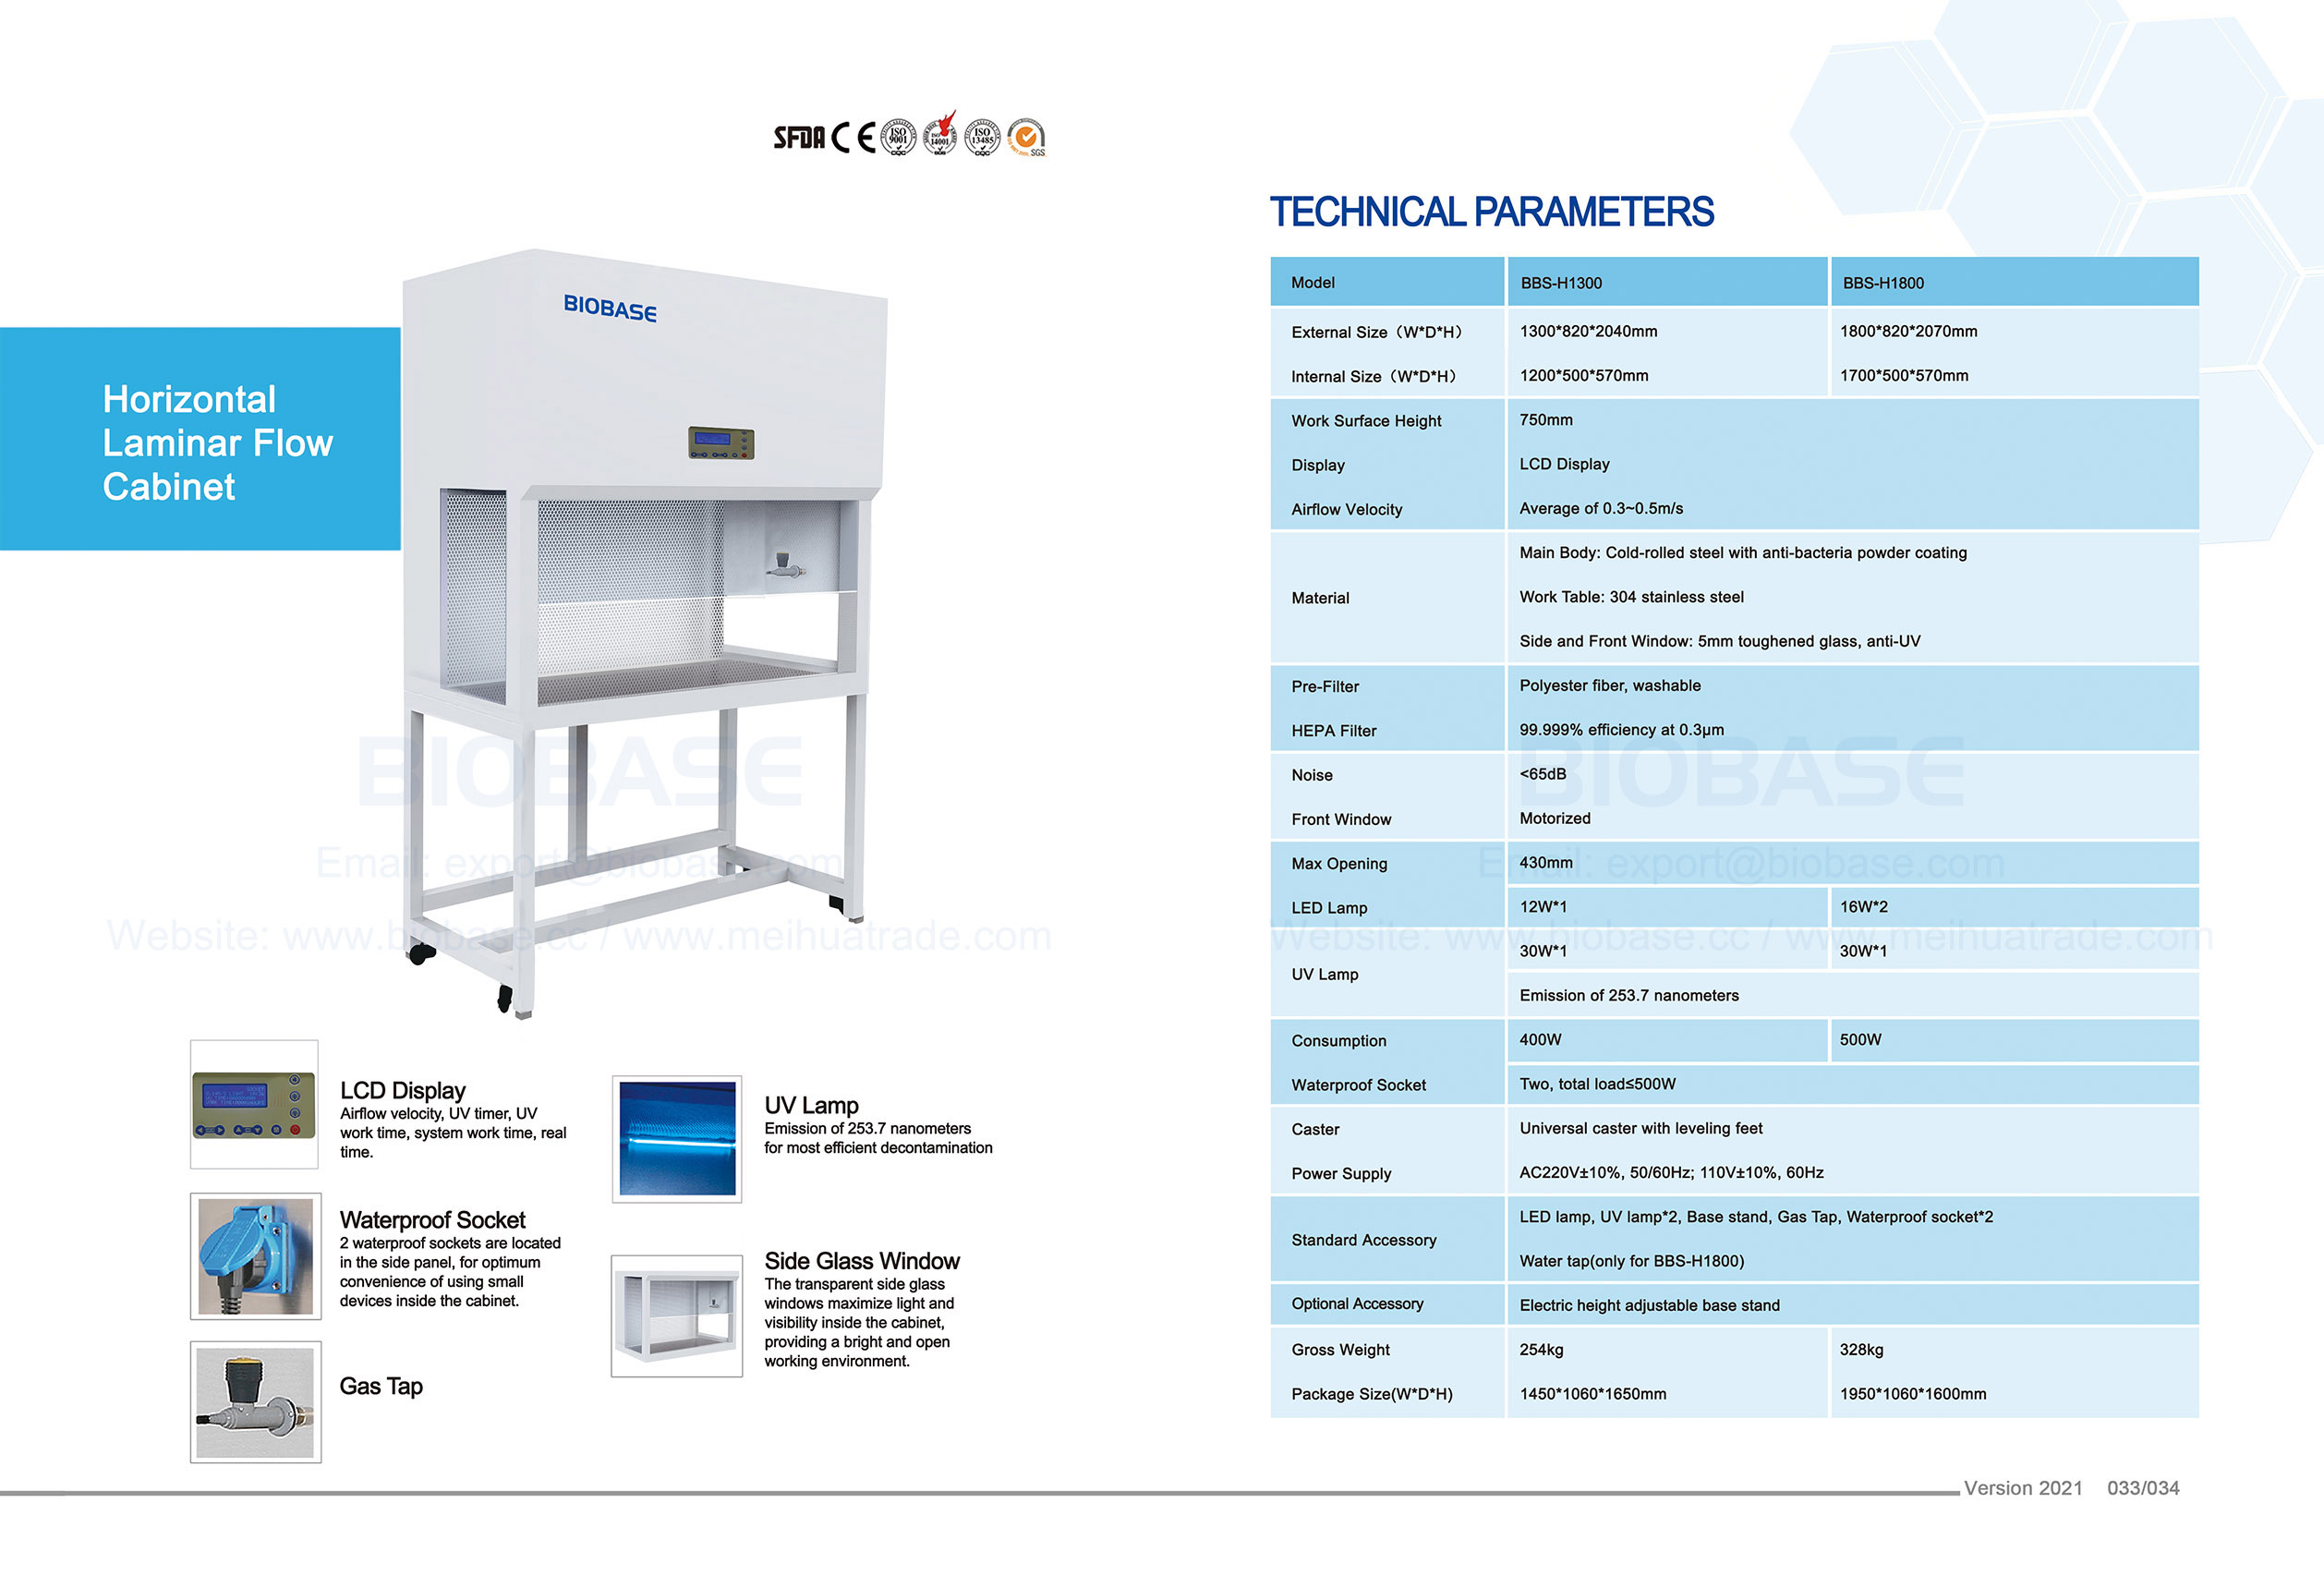 33-34 Horizontal Laminar Flow Cabinet--BBS-H1300